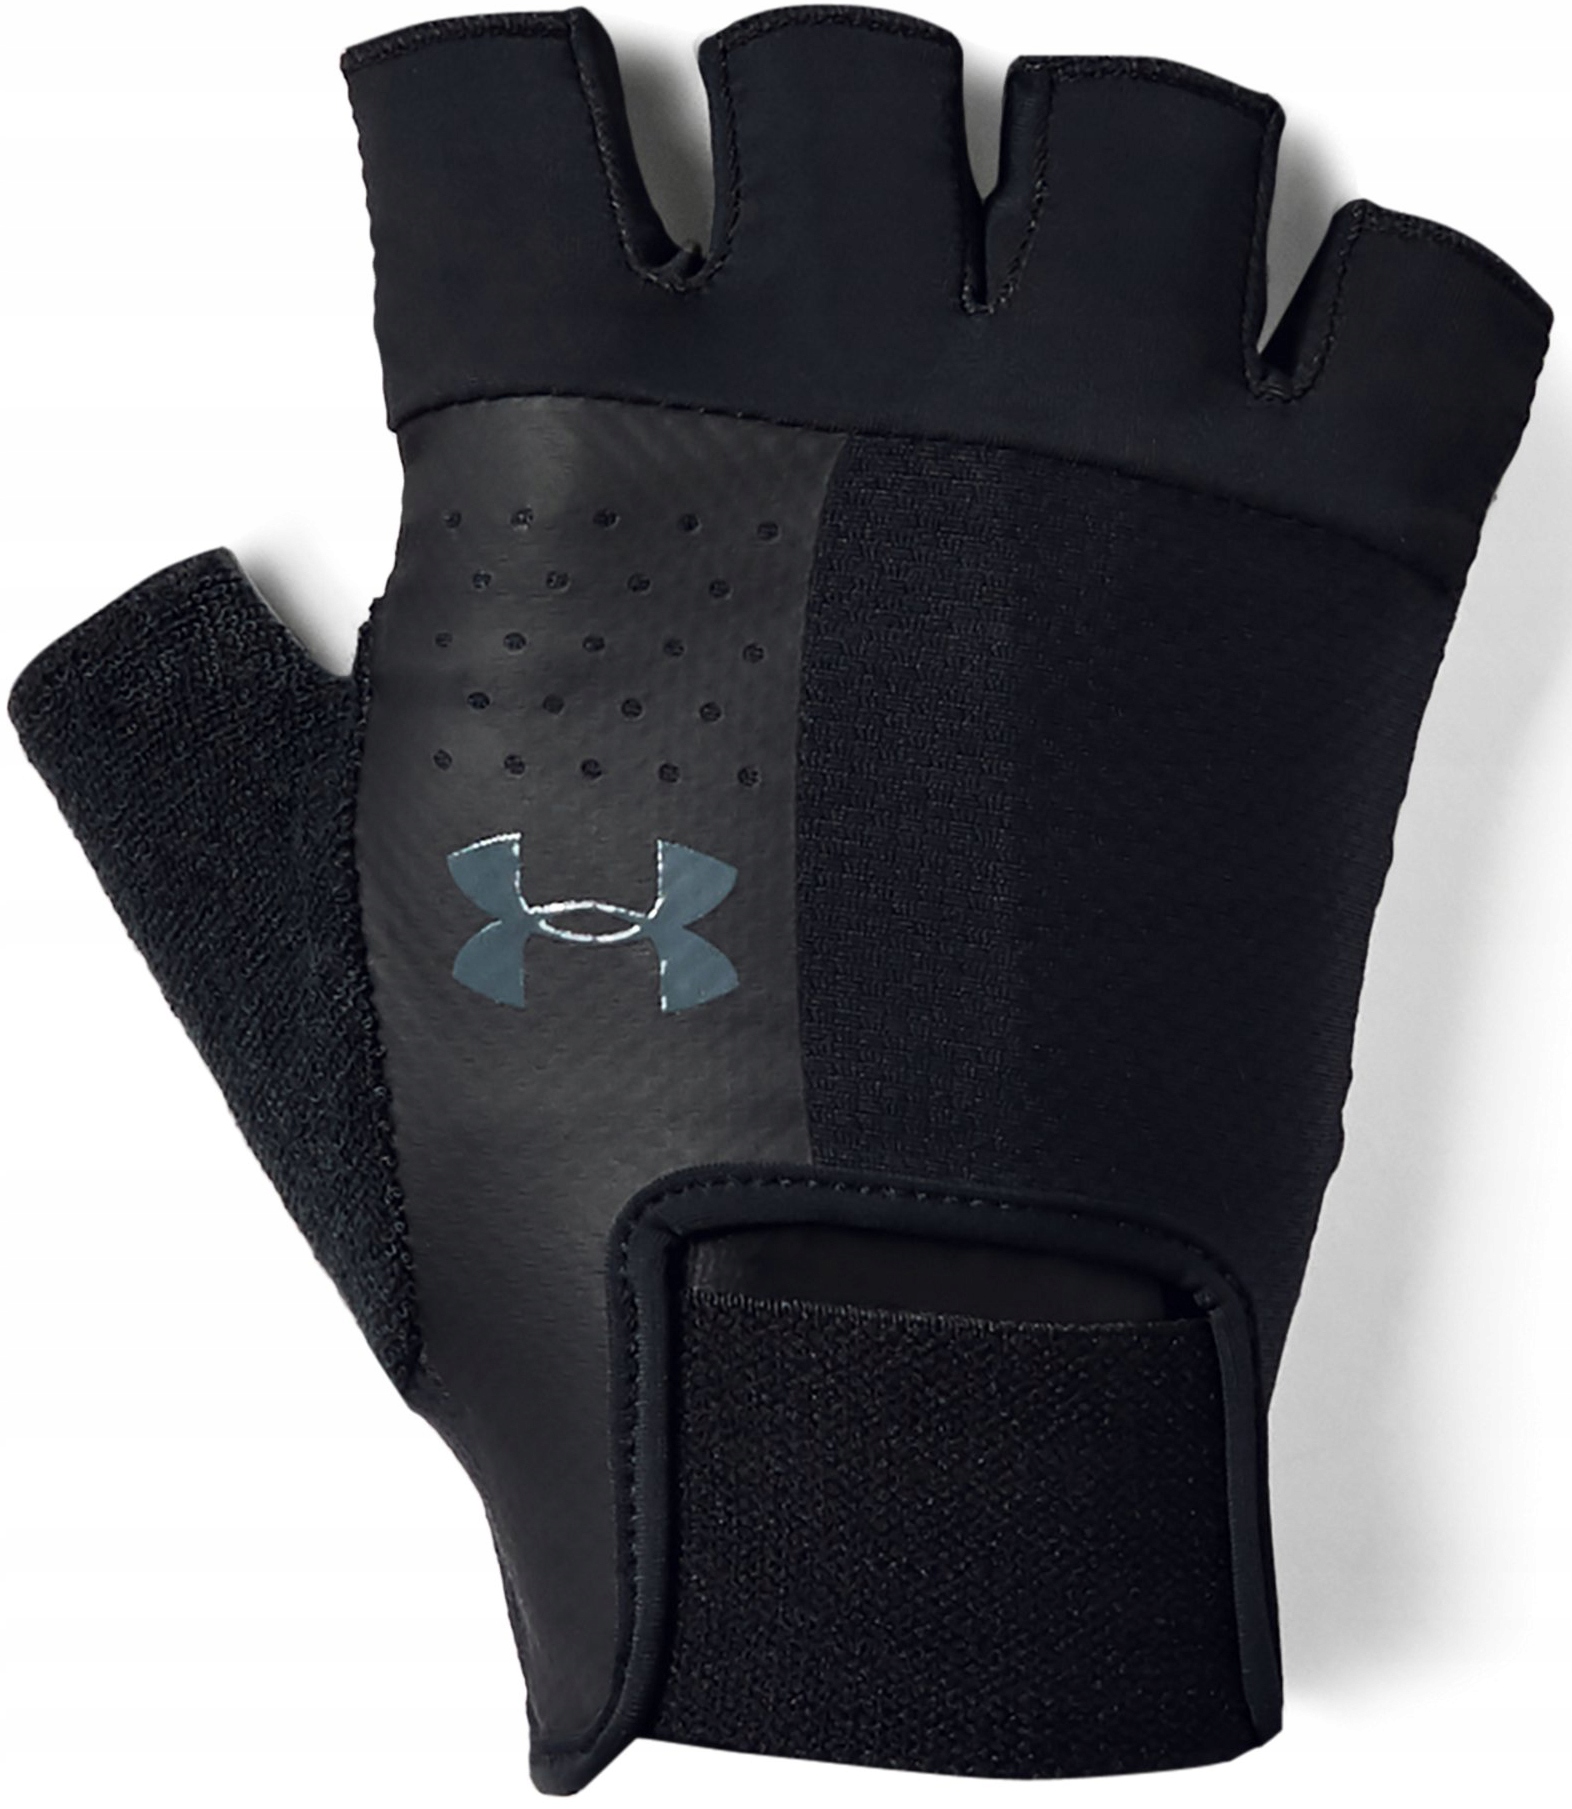 Перчатки тренировочные перчатки для фитнеса производитель код UA тренировочные перчатки (1328620-001)